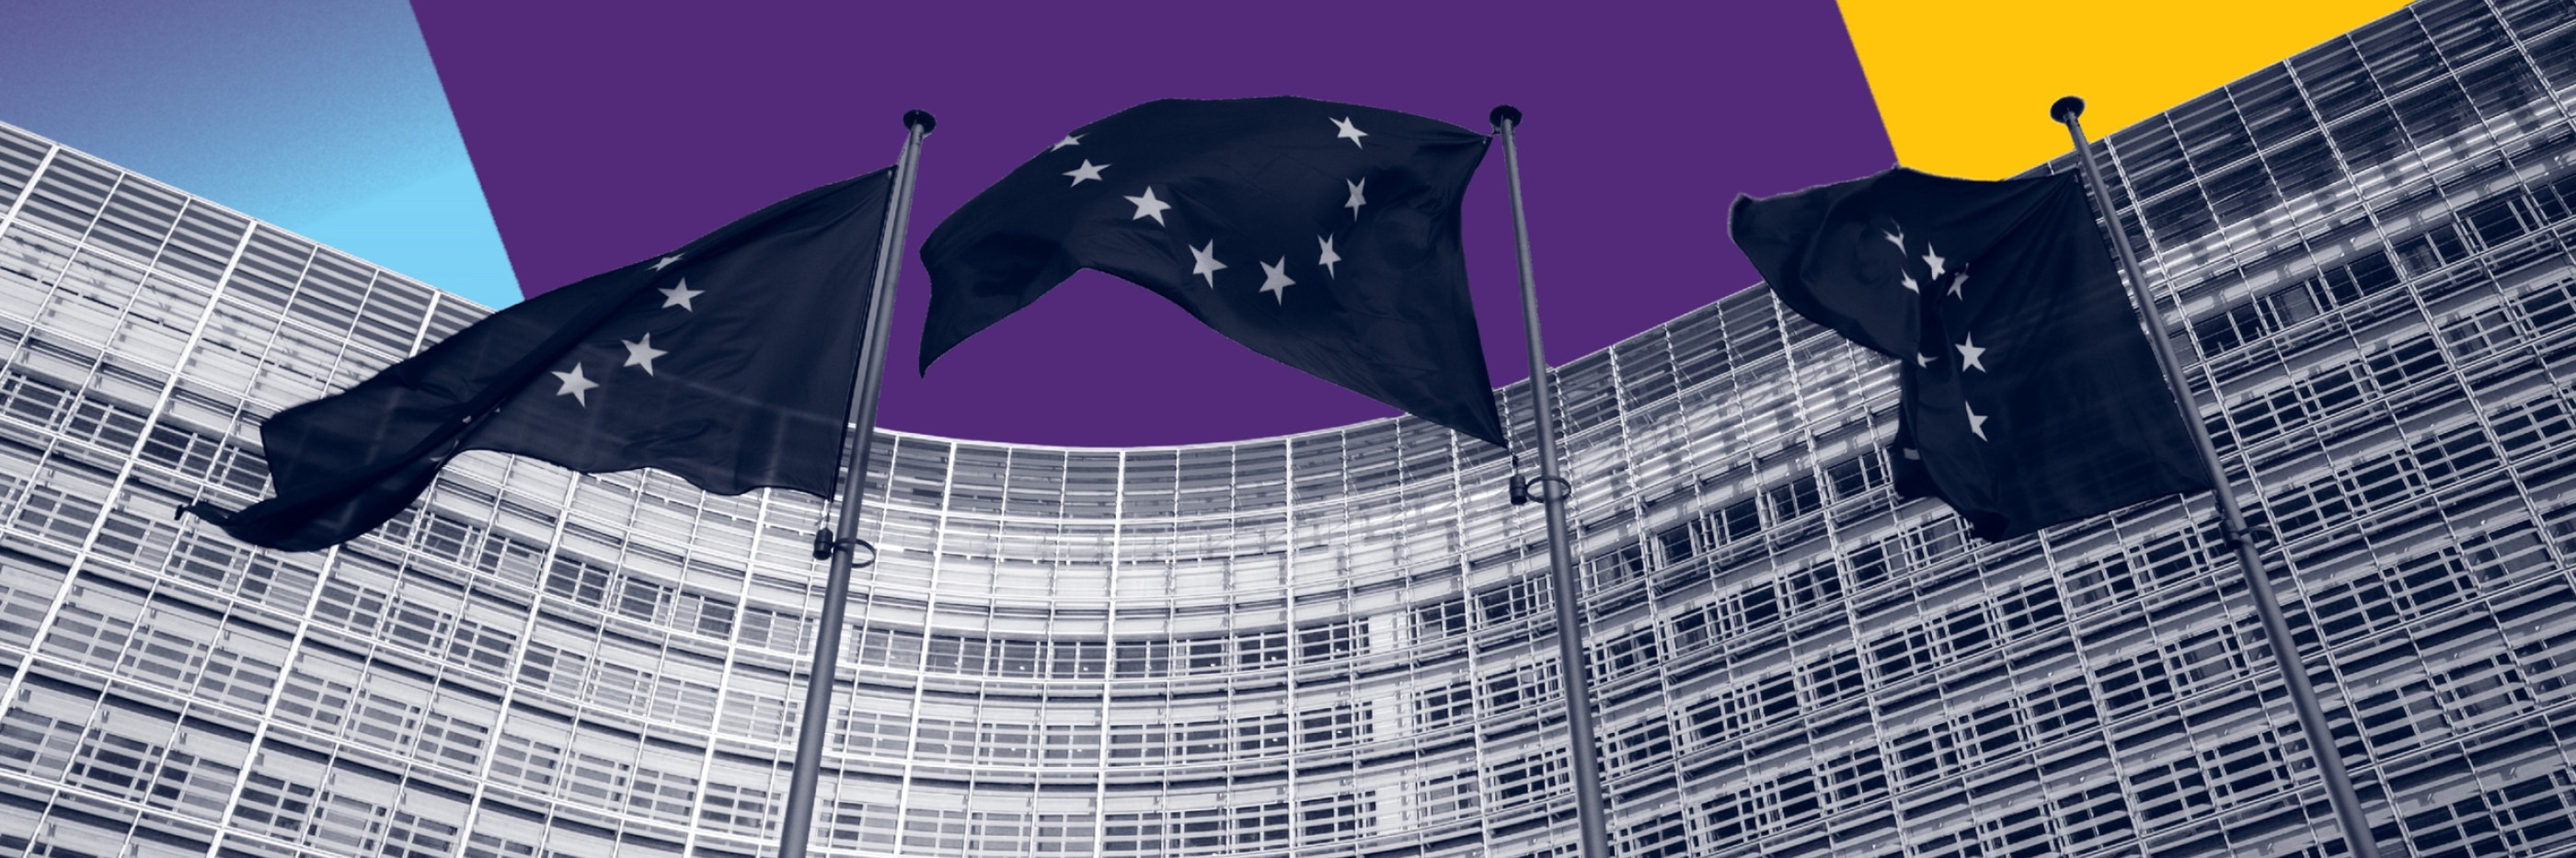 Europese parlement met Europa vlaggen met een geel, paarse en blauwe achtergrond